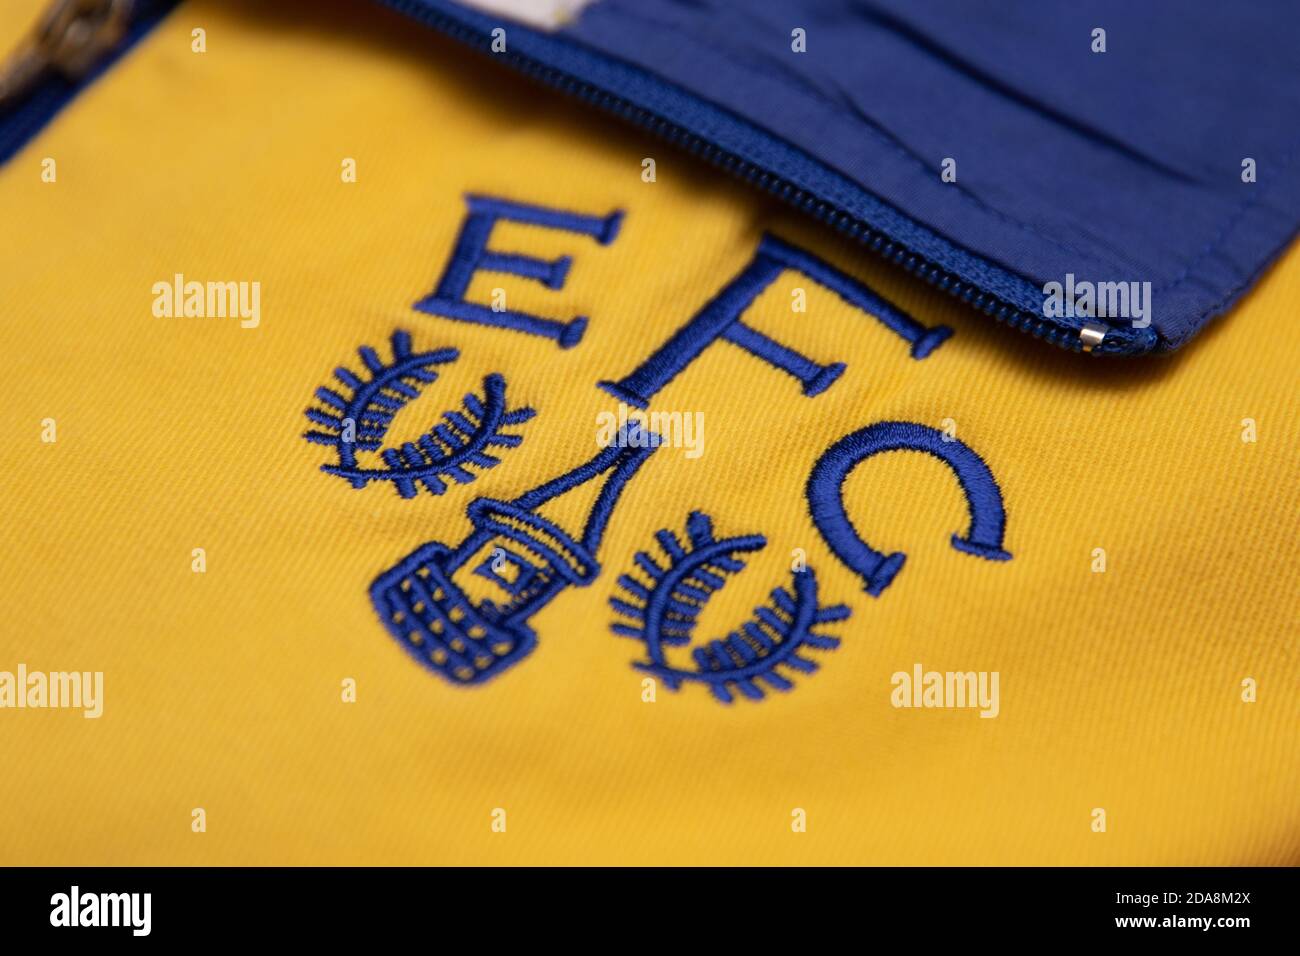 Logo du club de football d'Everton sur un sport jaune et bleu veste Banque D'Images